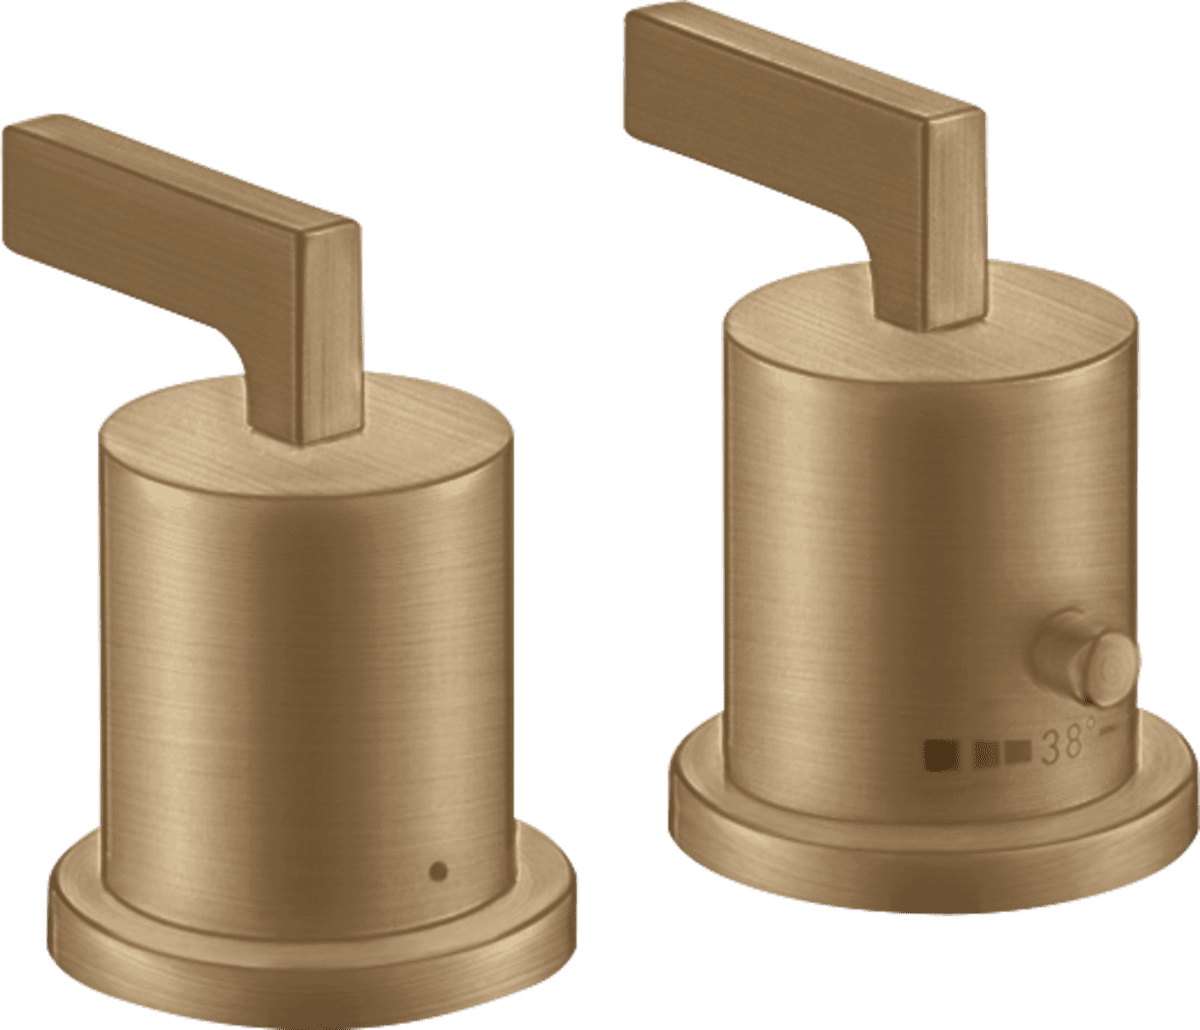 εικόνα του HANSGROHE AXOR Citterio 2-hole rim mounted thermostatic bath mixer with lever handles #39482140 - Brushed Bronze